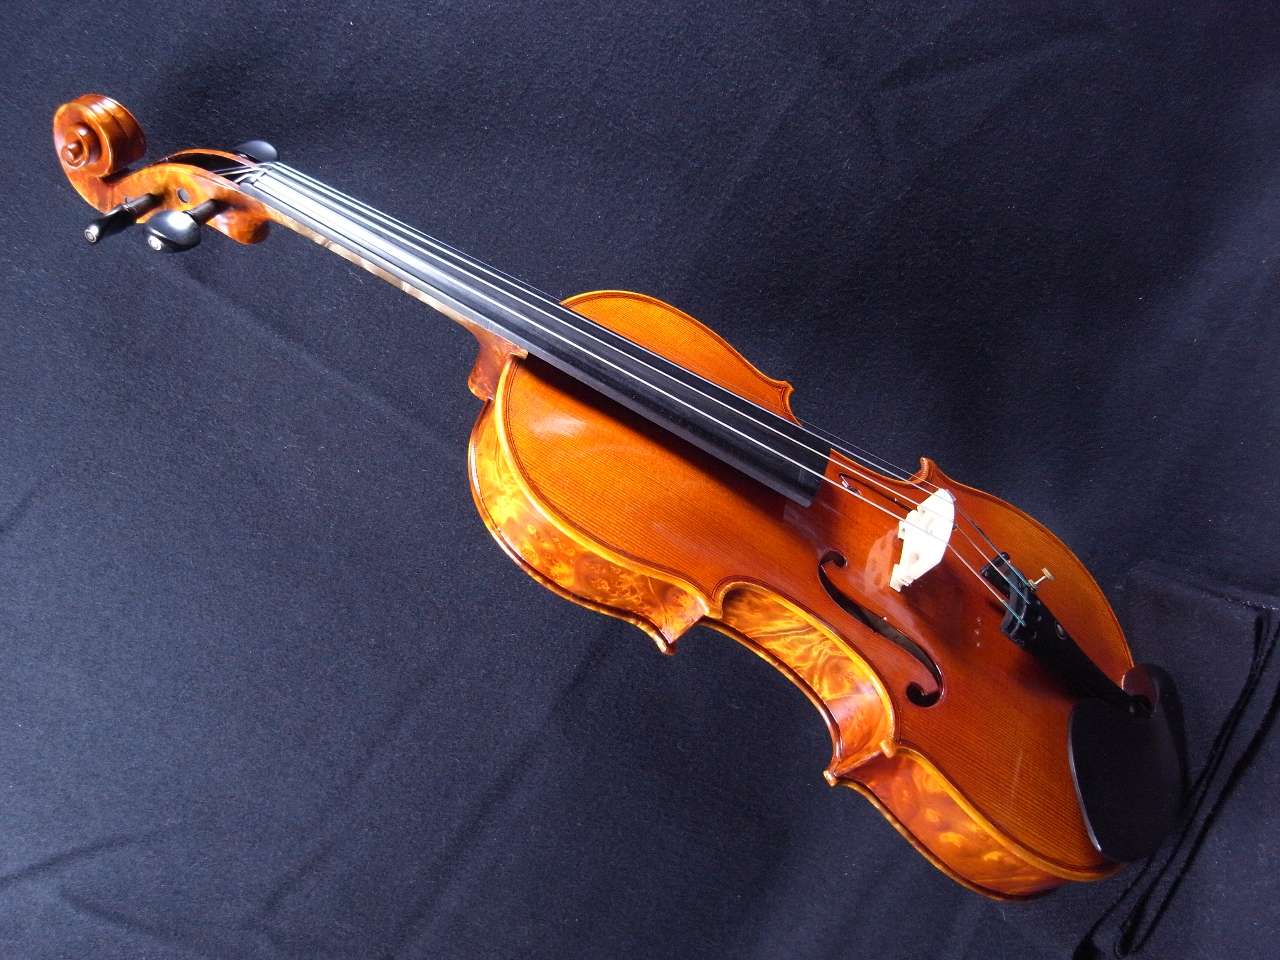 画像: Ma Zhibin工房ファインレベル・バーズアイメイプル・バイオリン